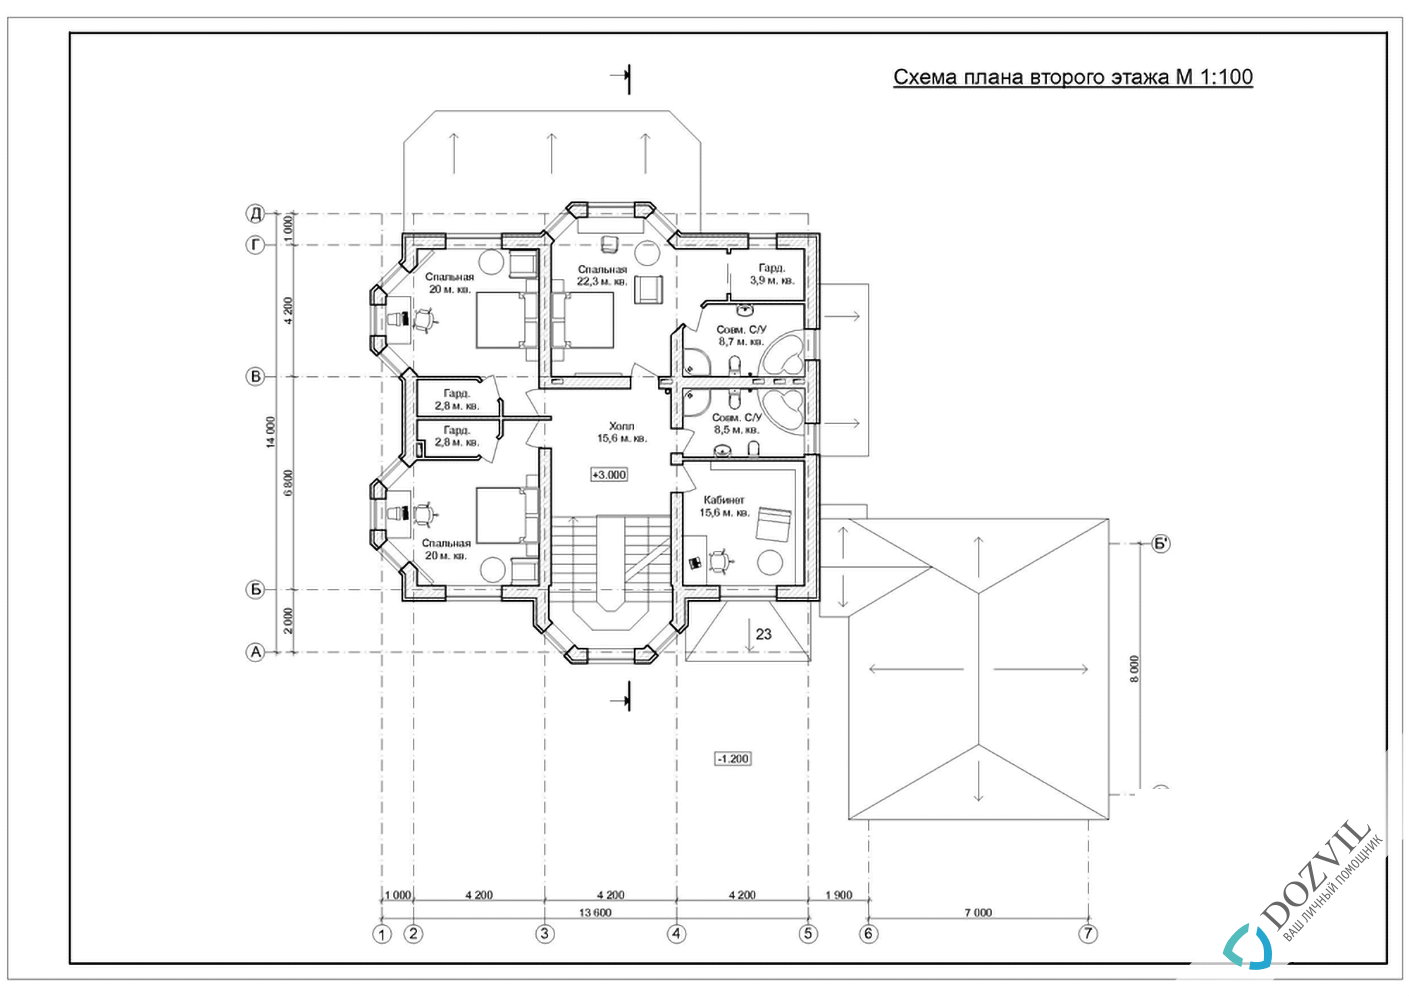 Разрешение на строительство дома> Дома с общей площадью до 500 квадратных метров, которые только планируют строить или построили самовольно после 09 апреля 2015 года. > 2 этап - Разработка эскиза намерений строительства.